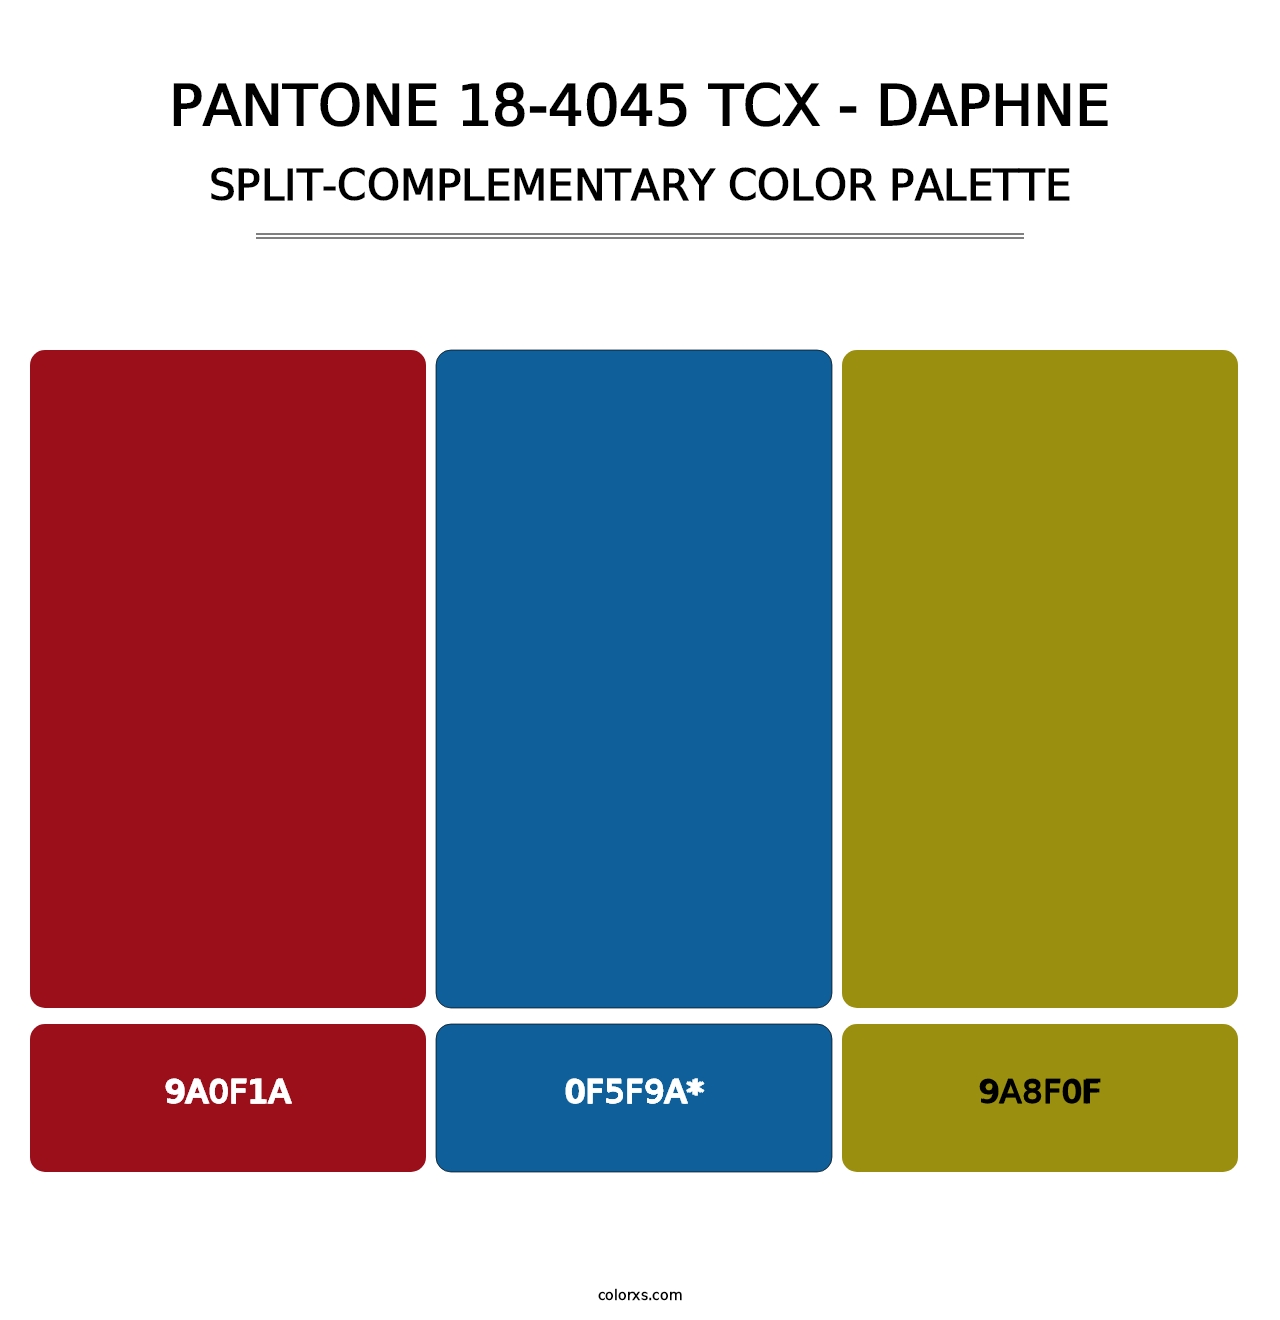 PANTONE 18-4045 TCX - Daphne - Split-Complementary Color Palette